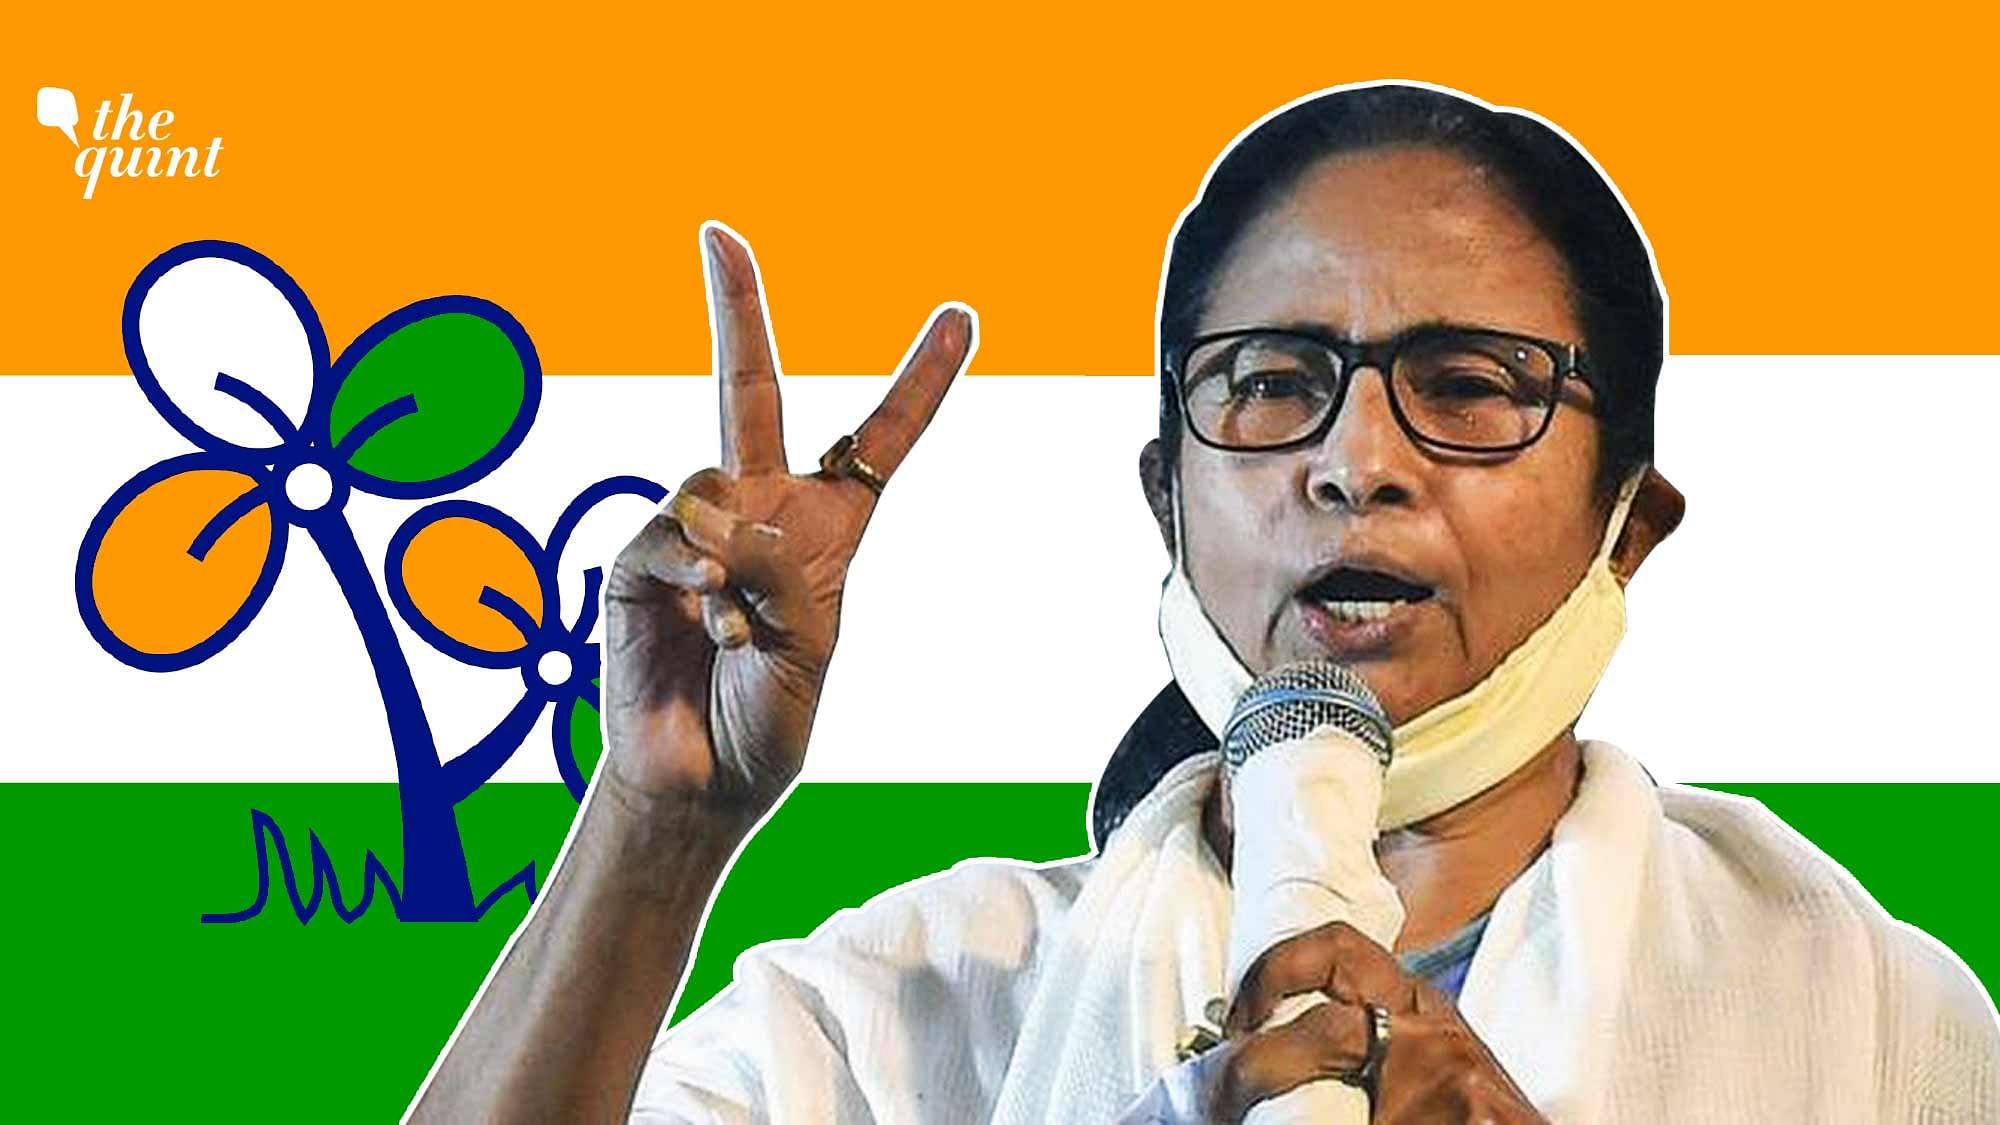 <div class="paragraphs"><p>West Bengal Municipal Polls: No Surprises as TMC Clean Sweeps Amidst Violence</p></div>